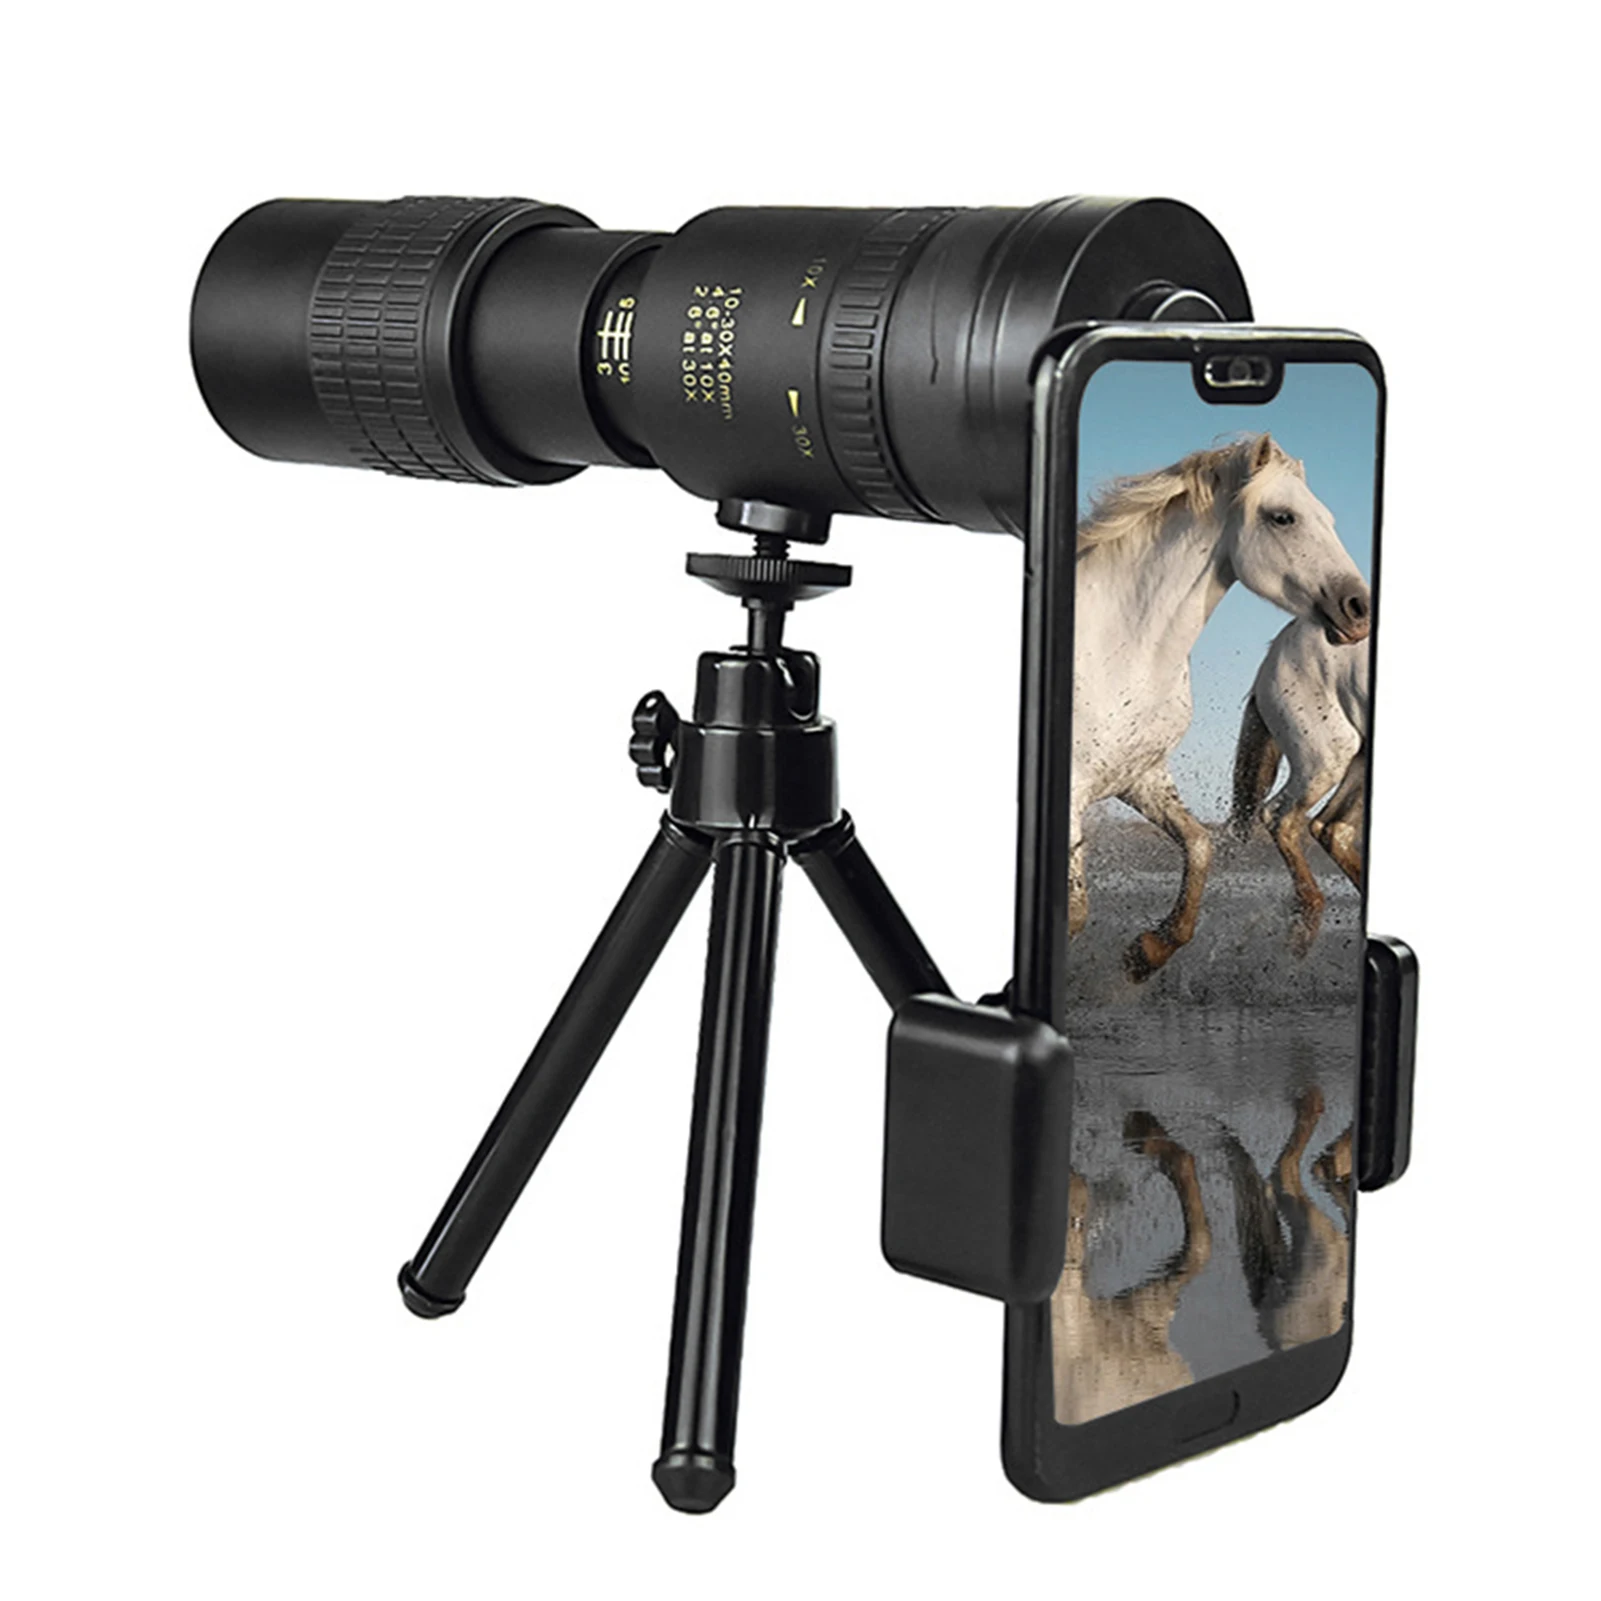 

4K 10-300x40mm Монокуляр телескоп HD зум Водонепроницаемый Анти-туман Ночное видение мобильный телефон BAK4 Призма Камера для Охота Отдых на природе